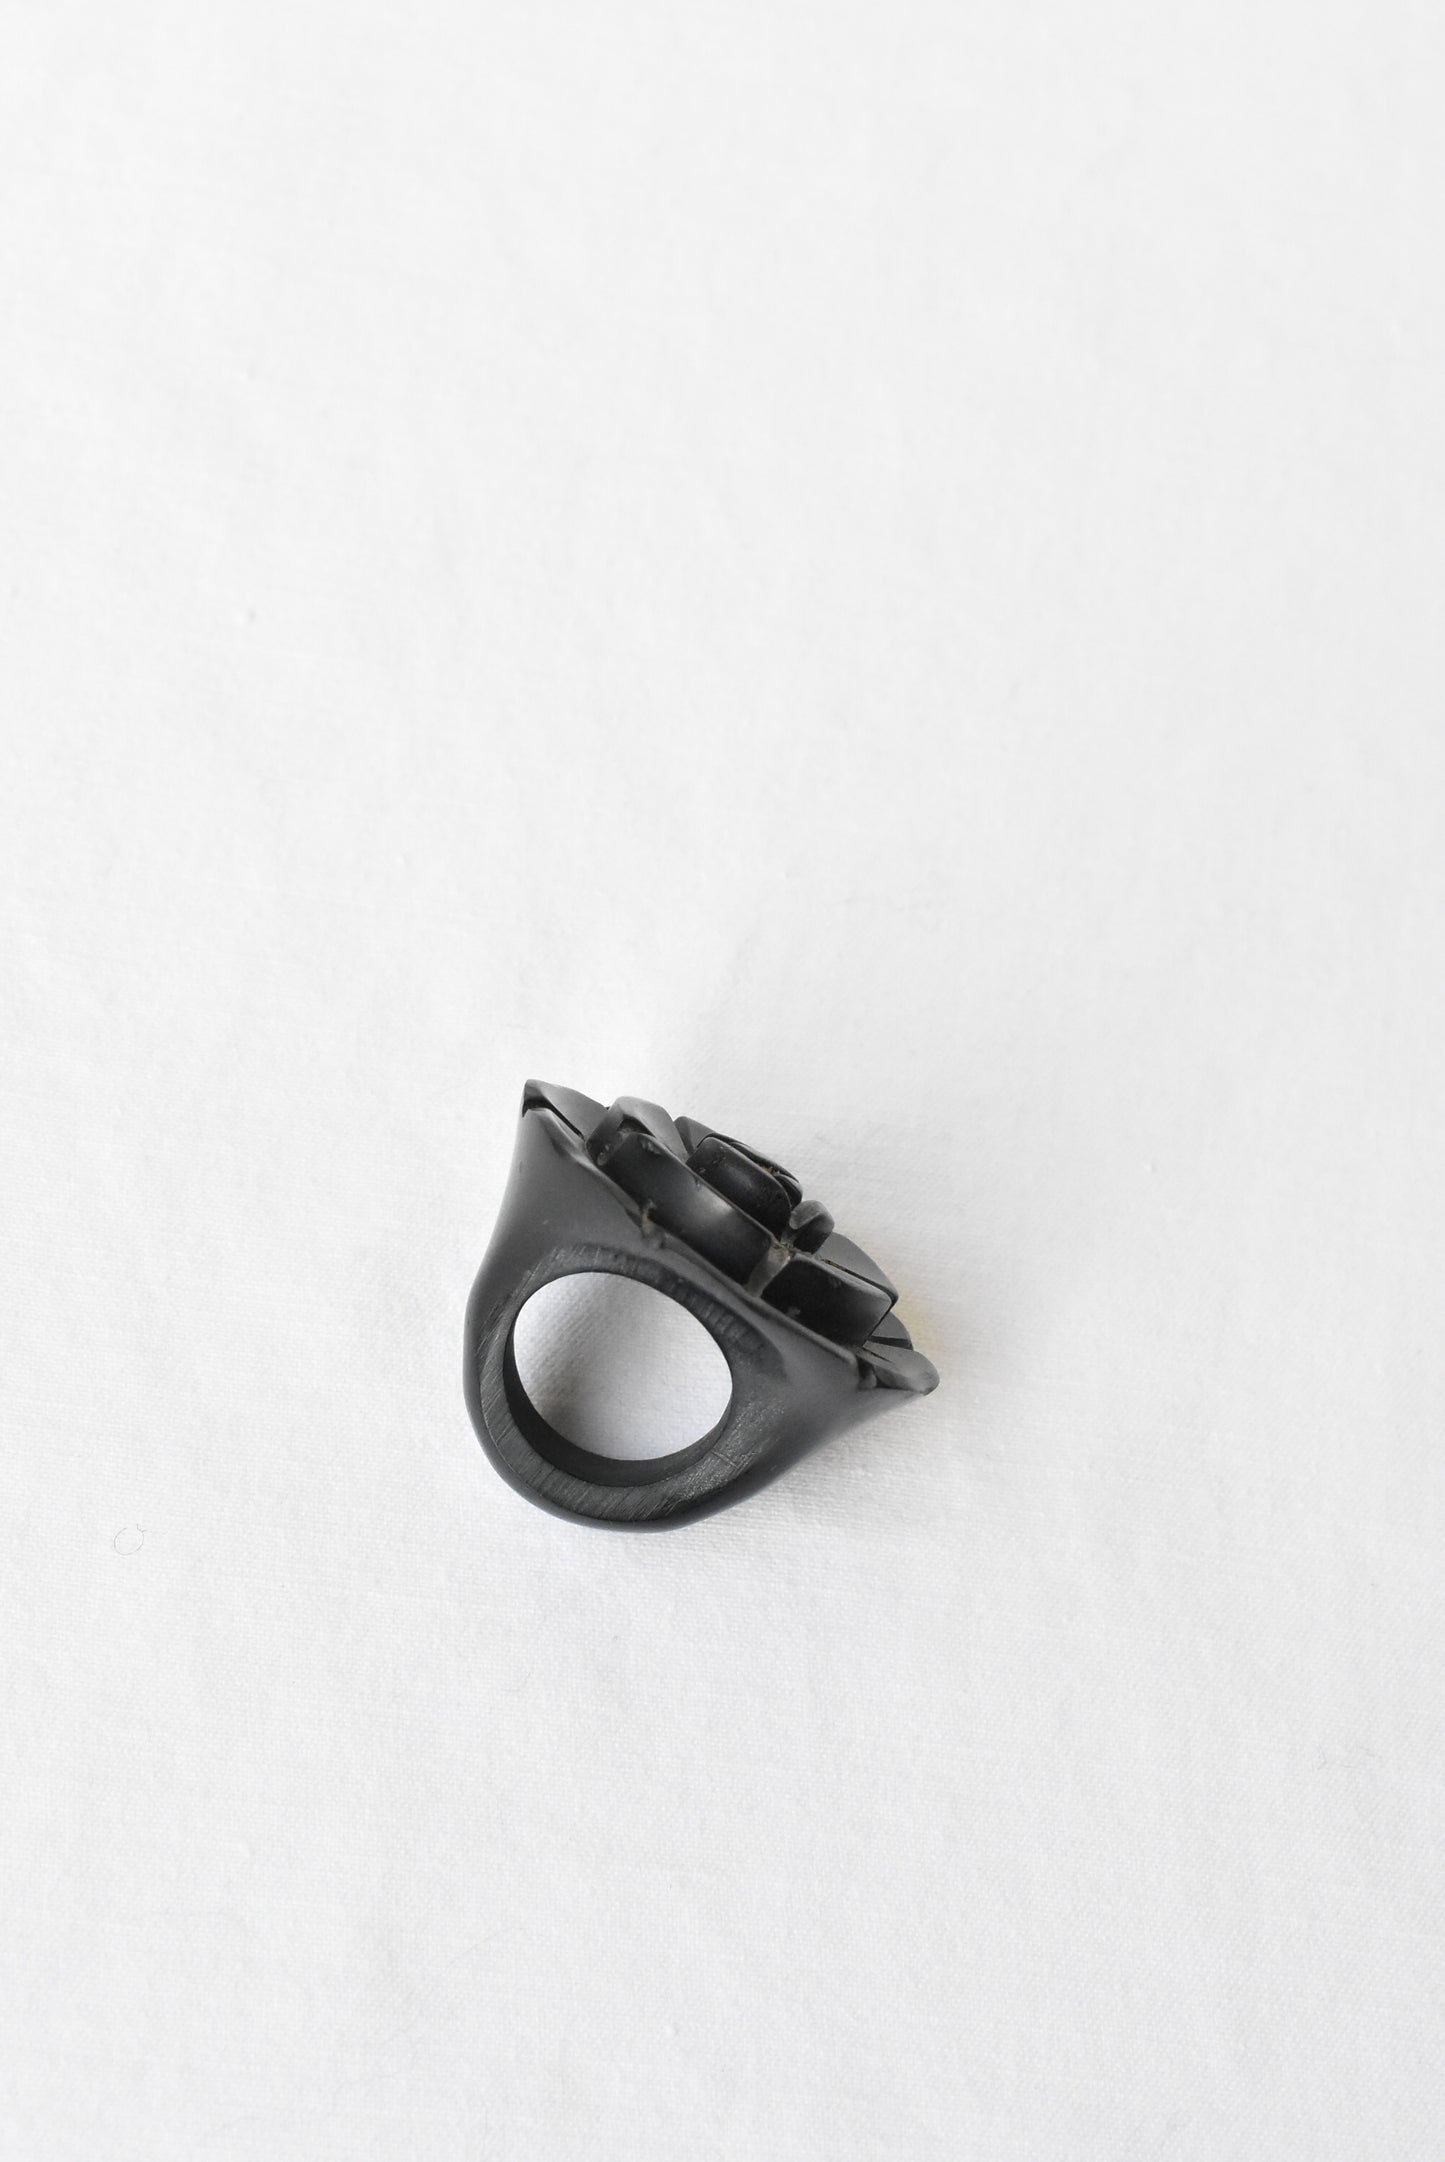 Black rose ring